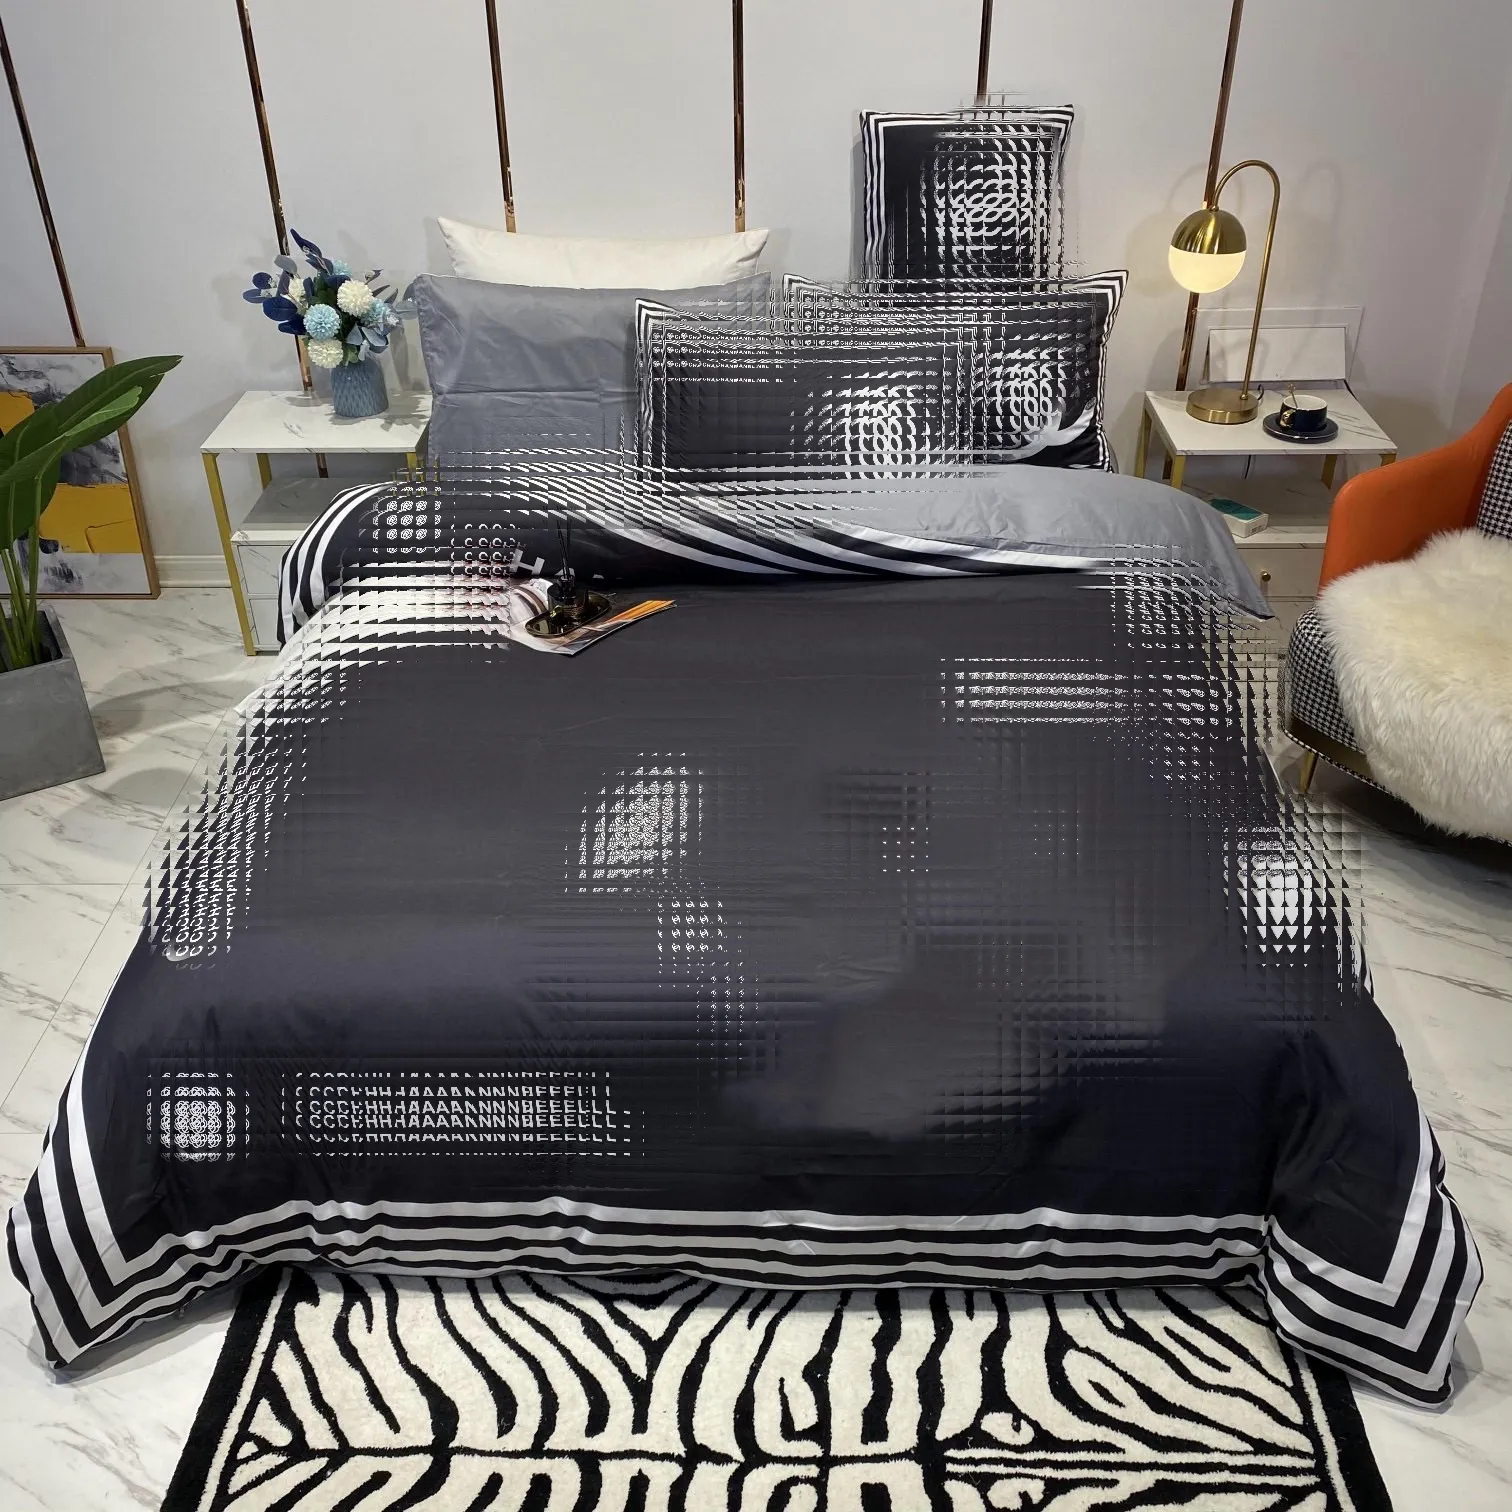 Diseñador de moda juegos de cama tamaño king 4 piezas floral impreso seda reina funda nórdica sábana negro rosa fundas de almohada de alta calidad